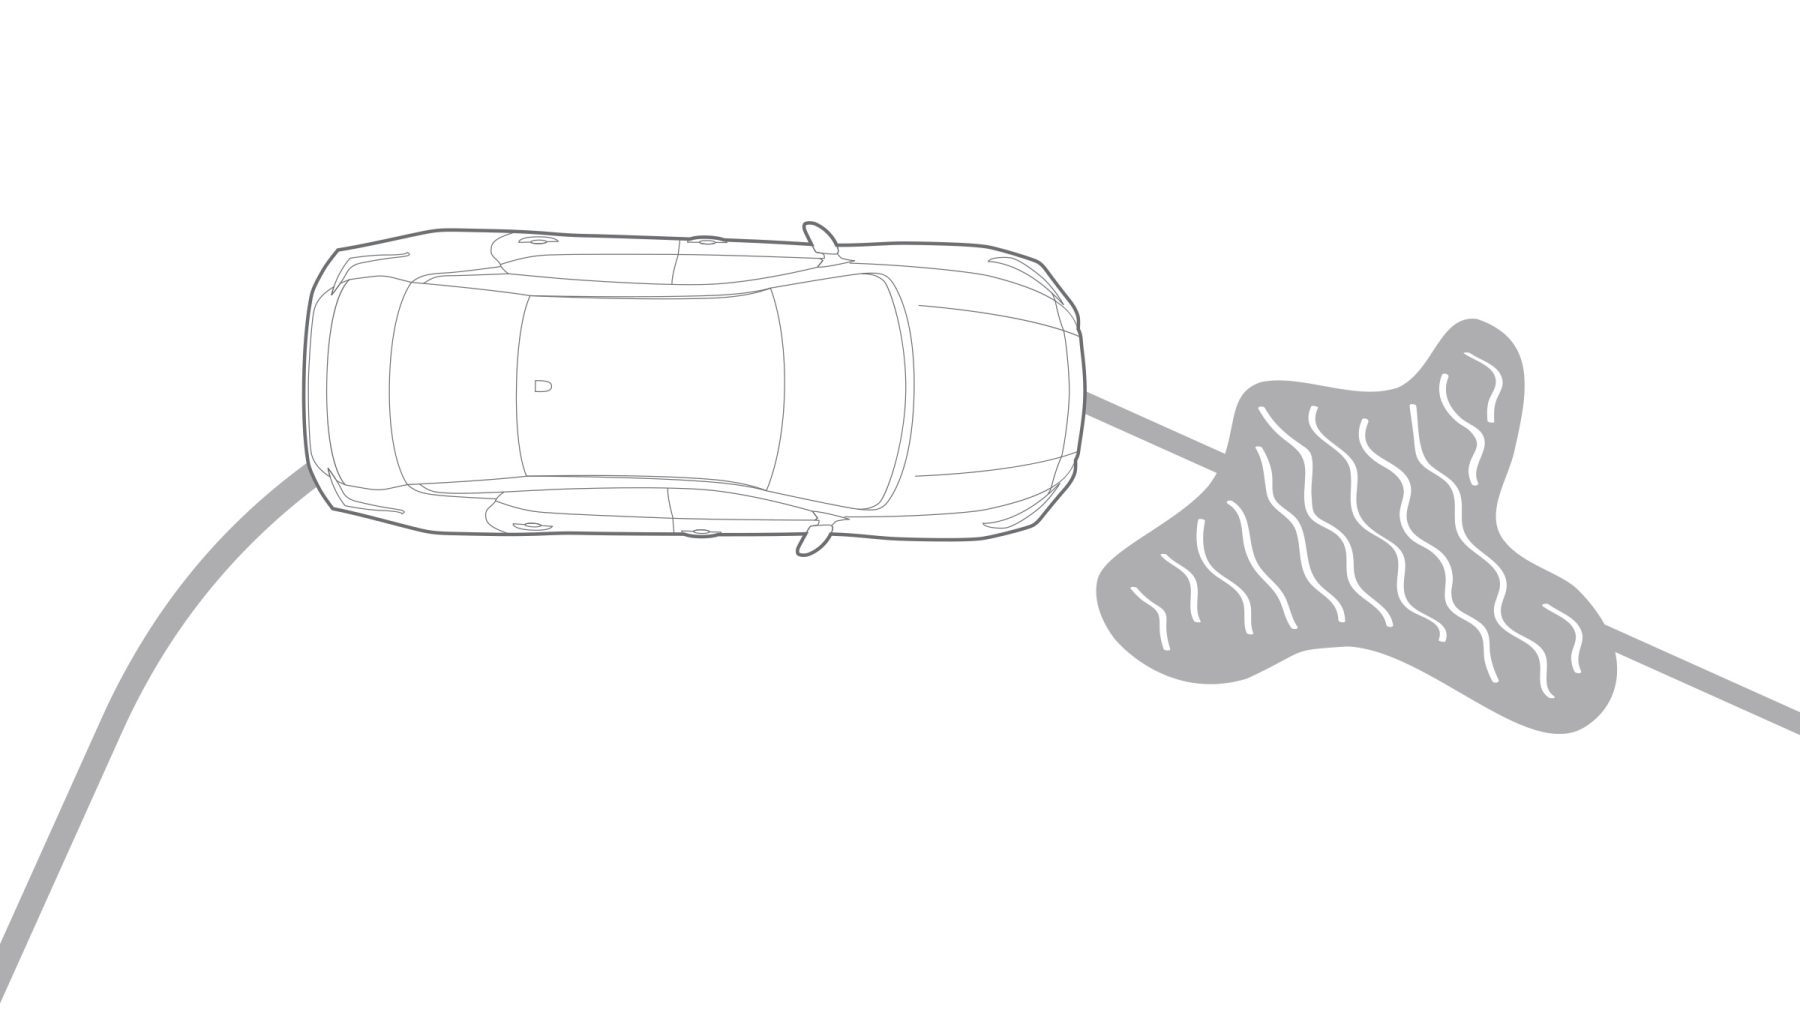 رسم بياني للتحكم في دوران العجلات داخل سيارة نيسان ألتيما